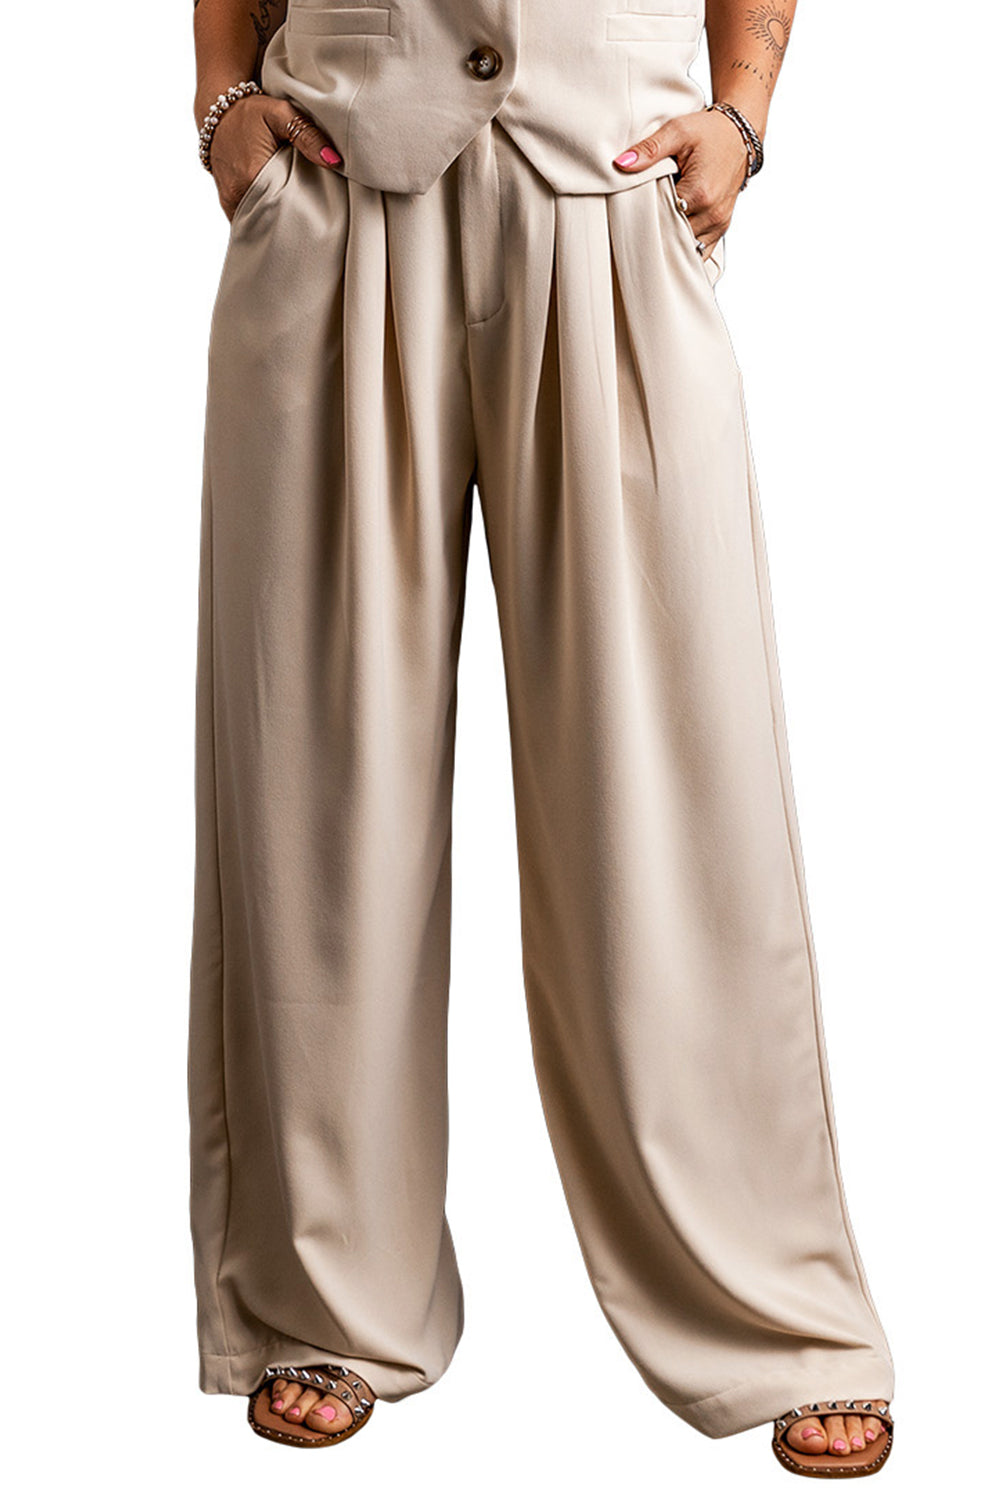 Pantaloni a gamba larga pieghettati in vita elastica color albicocca